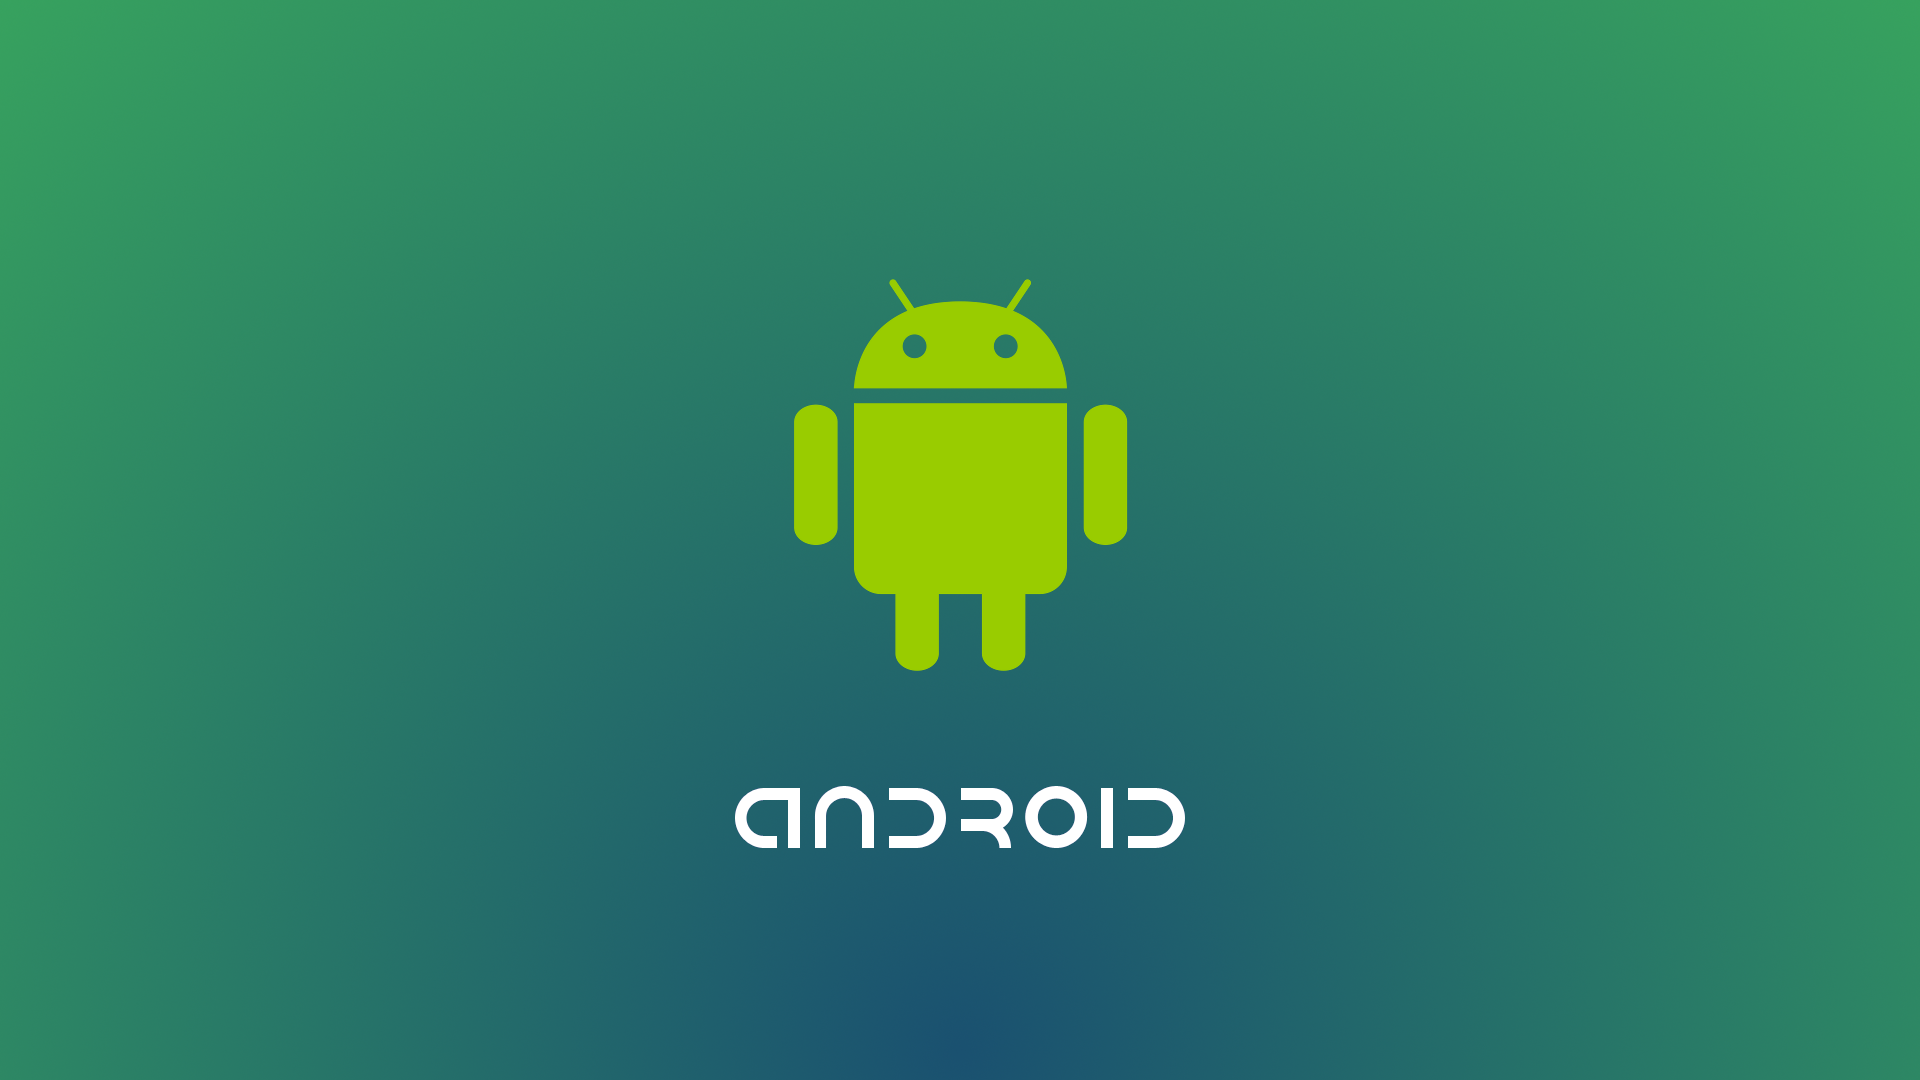 Android continua ad essere il leader indiscusso del mercato dei sistemi operativi mobili - HarmonyOS detiene già una quota del 2%.